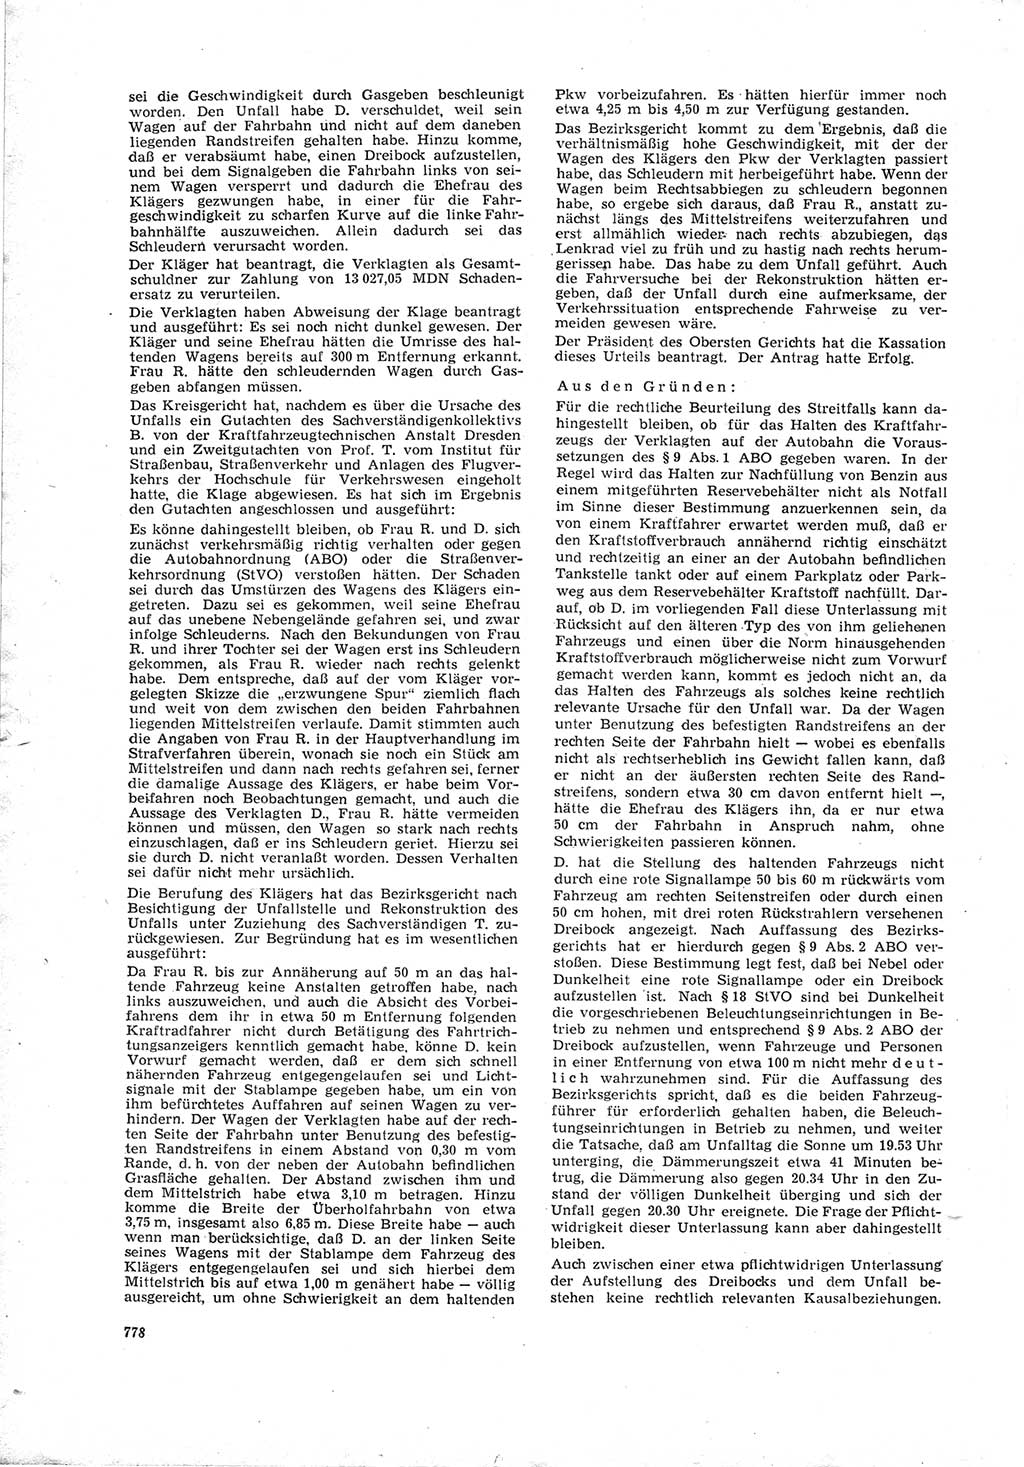 Neue Justiz (NJ), Zeitschrift für Recht und Rechtswissenschaft [Deutsche Demokratische Republik (DDR)], 19. Jahrgang 1965, Seite 778 (NJ DDR 1965, S. 778)